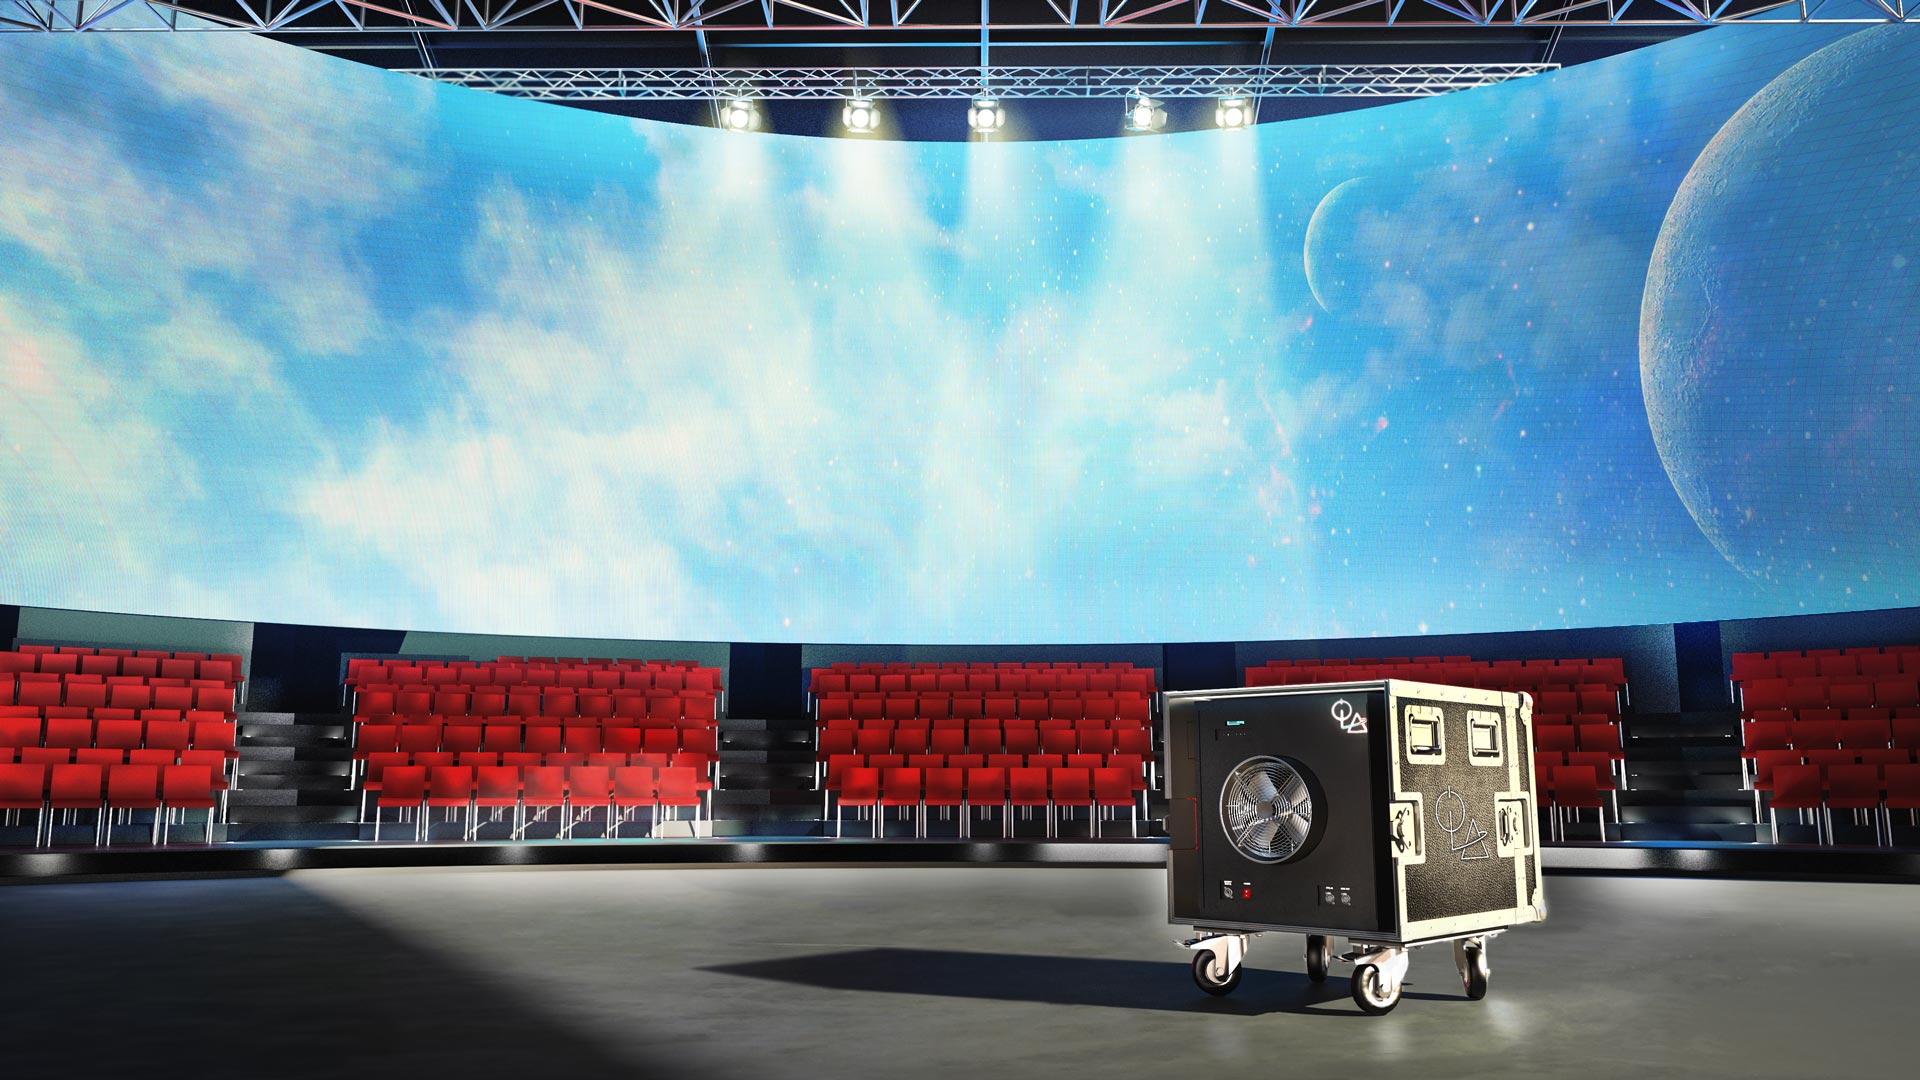 Immagine di un teatro o studio televisivo con al centro un box portatile della linea ROLL